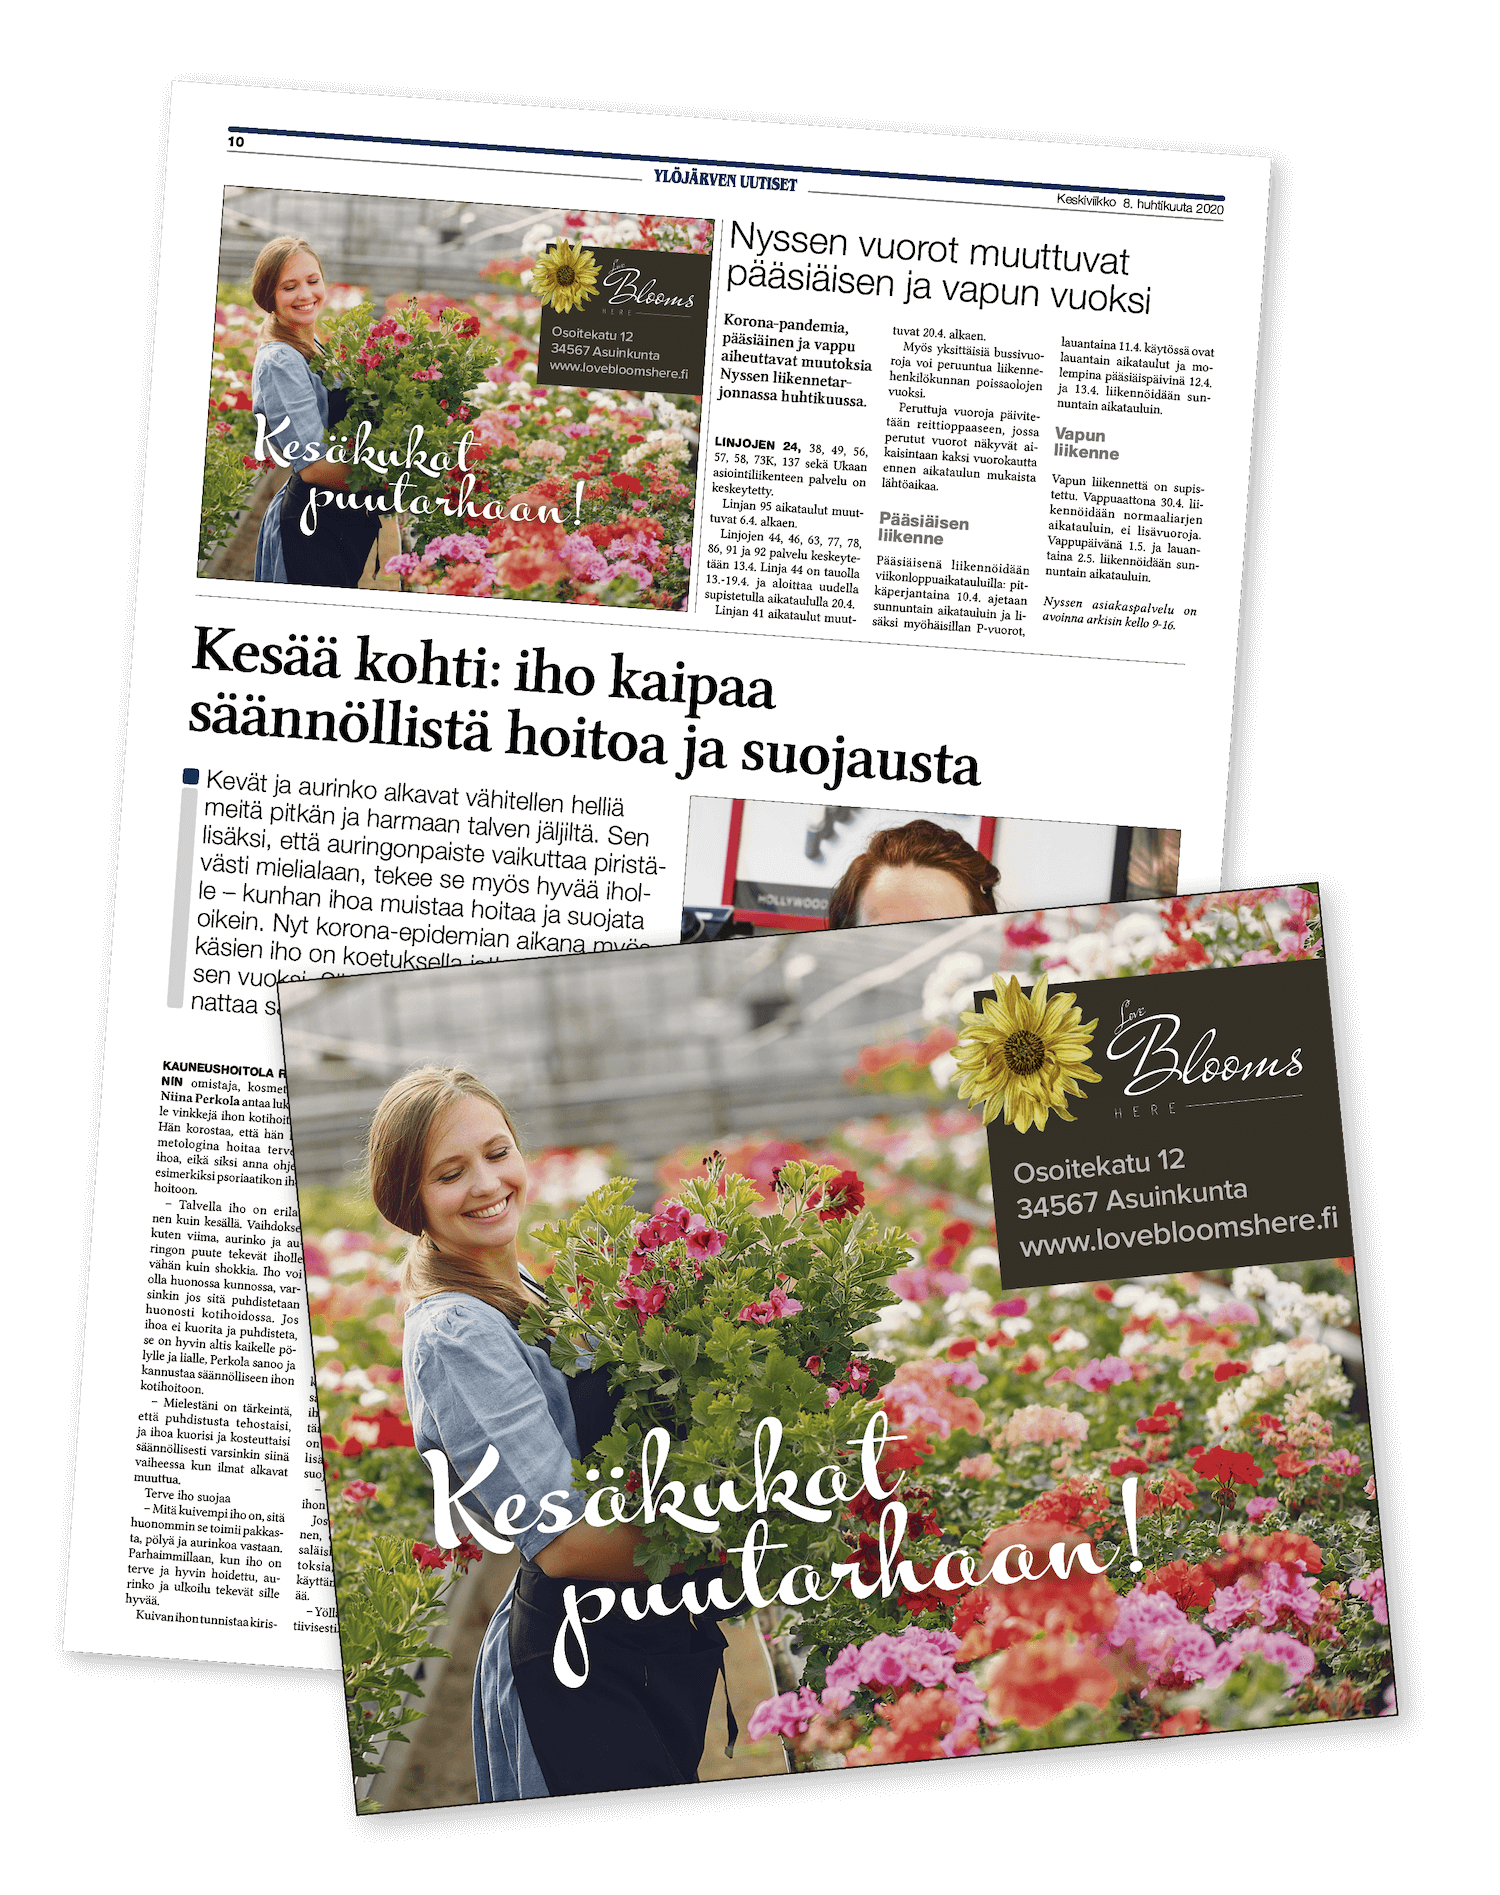 Ylöjärven Uutiset paperilehden mainos